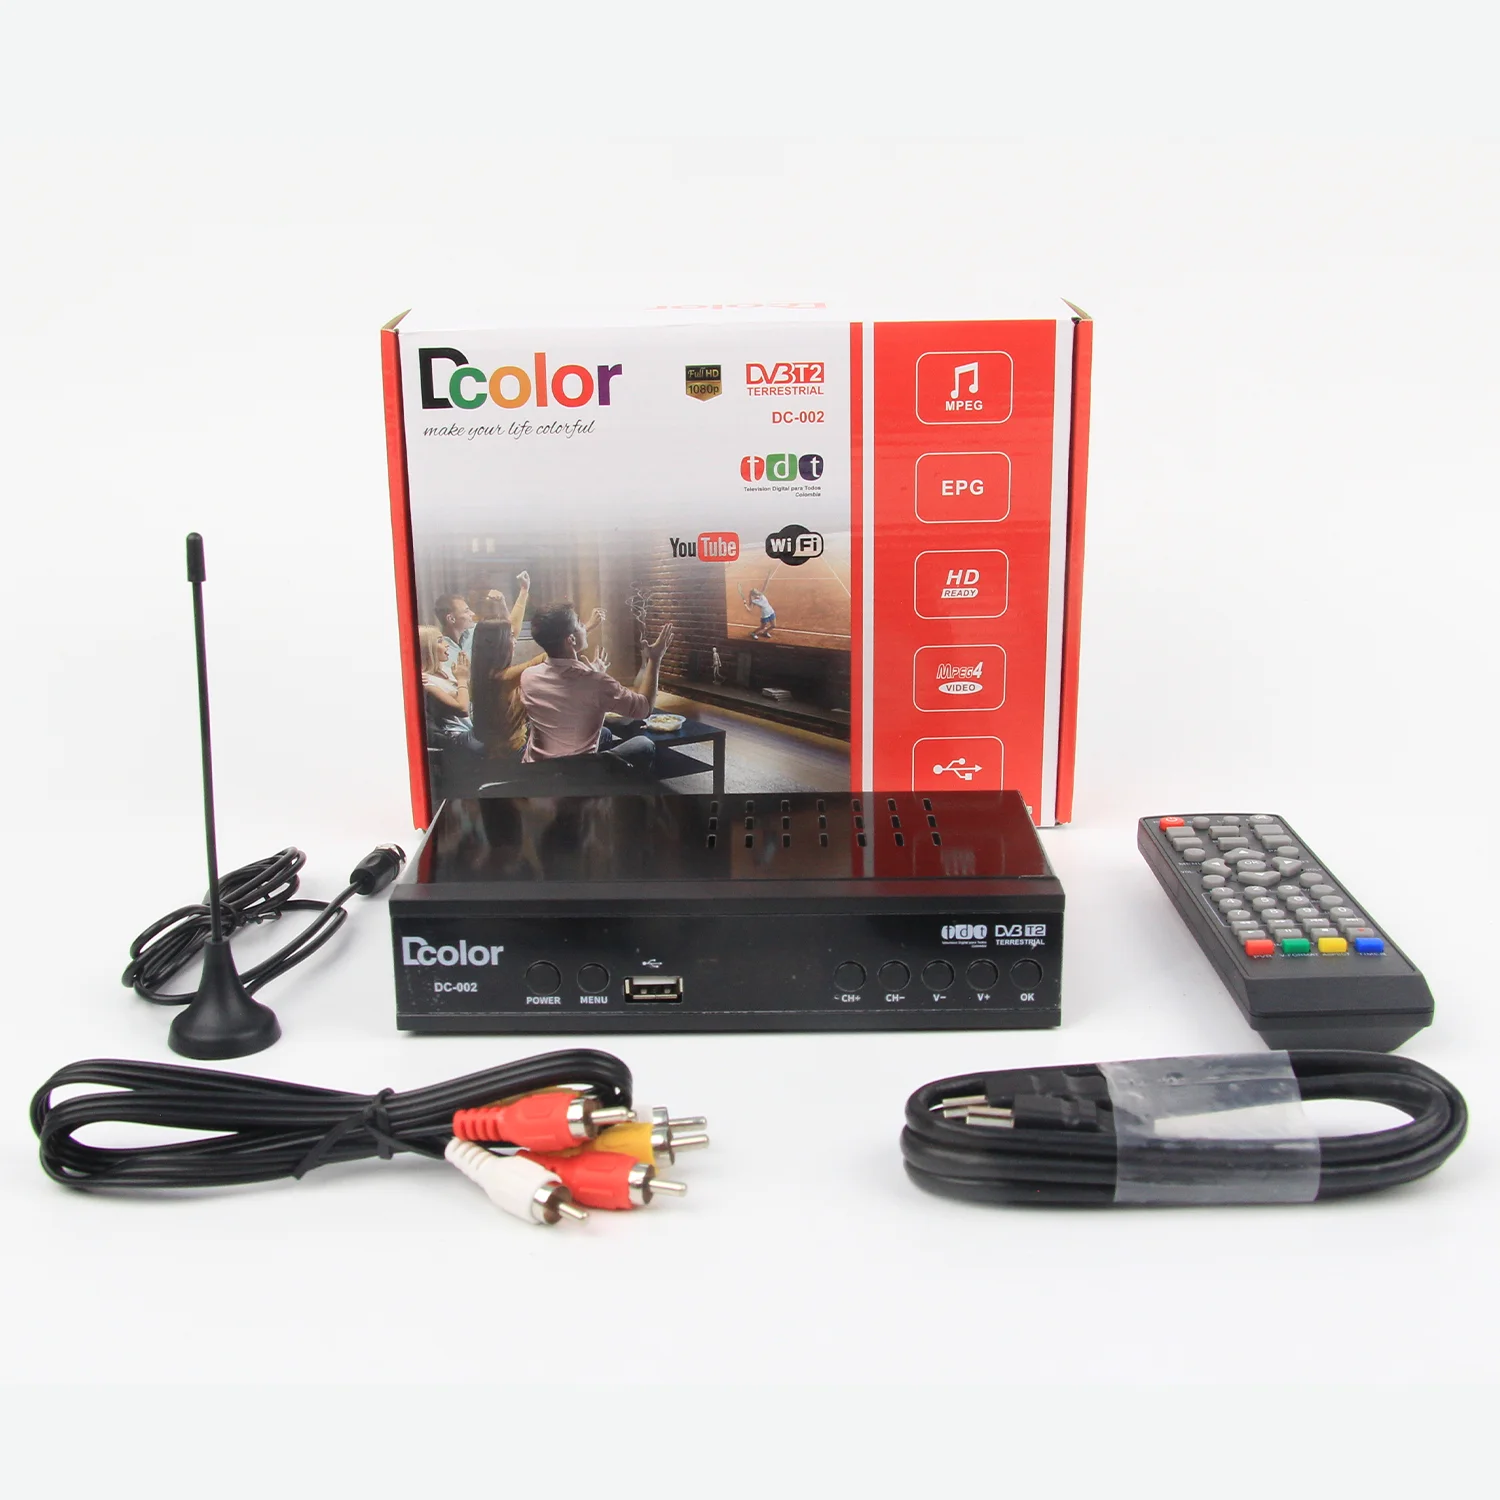 Set Top Box Tdt DVB-T2 Decodificador Digital TV Box Colombia - China Set  Top Box, DVB-T